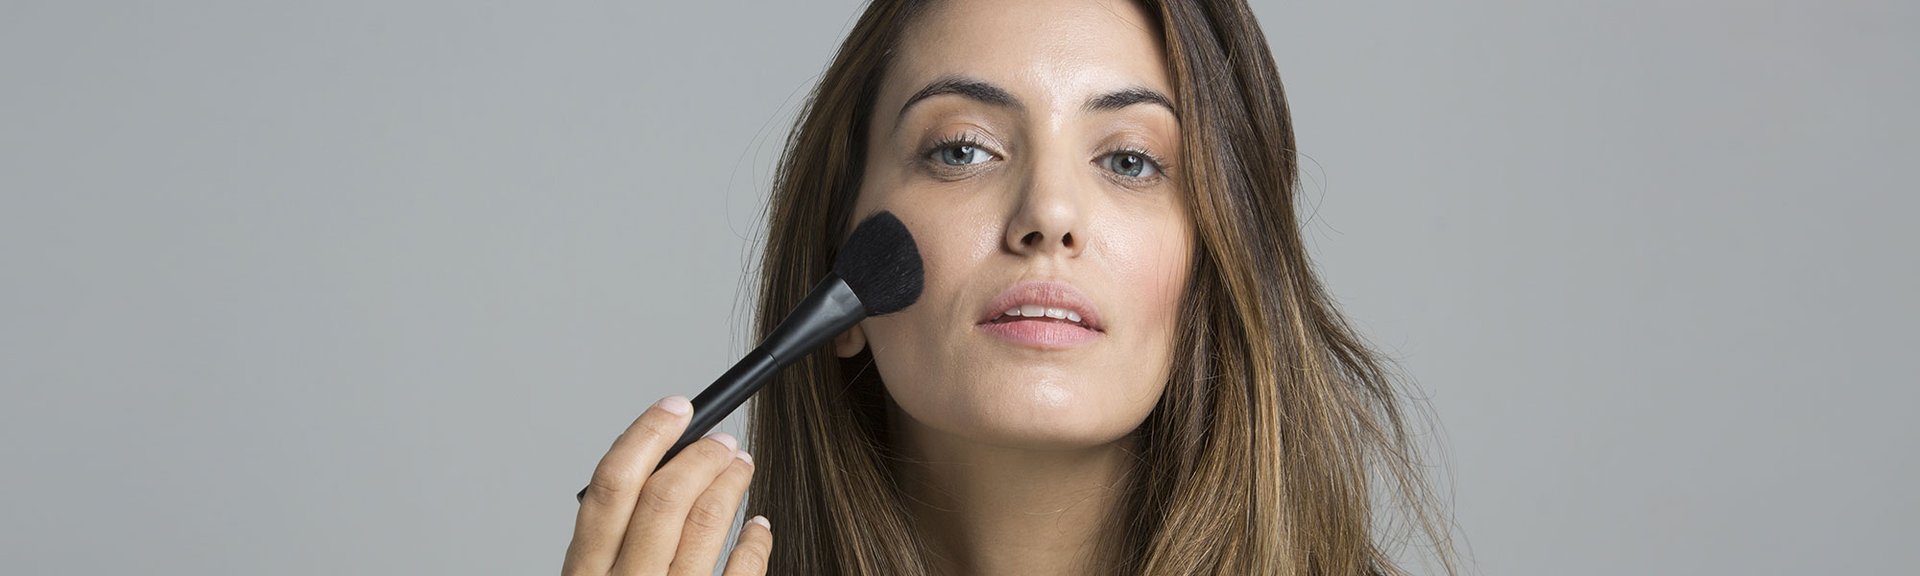 CÓMO LIMPIAR BROCHAS MAQUILLAJE  Limpieza y cuidado de tus brochas de  maquillaje: consejos para mantenerlas impecables